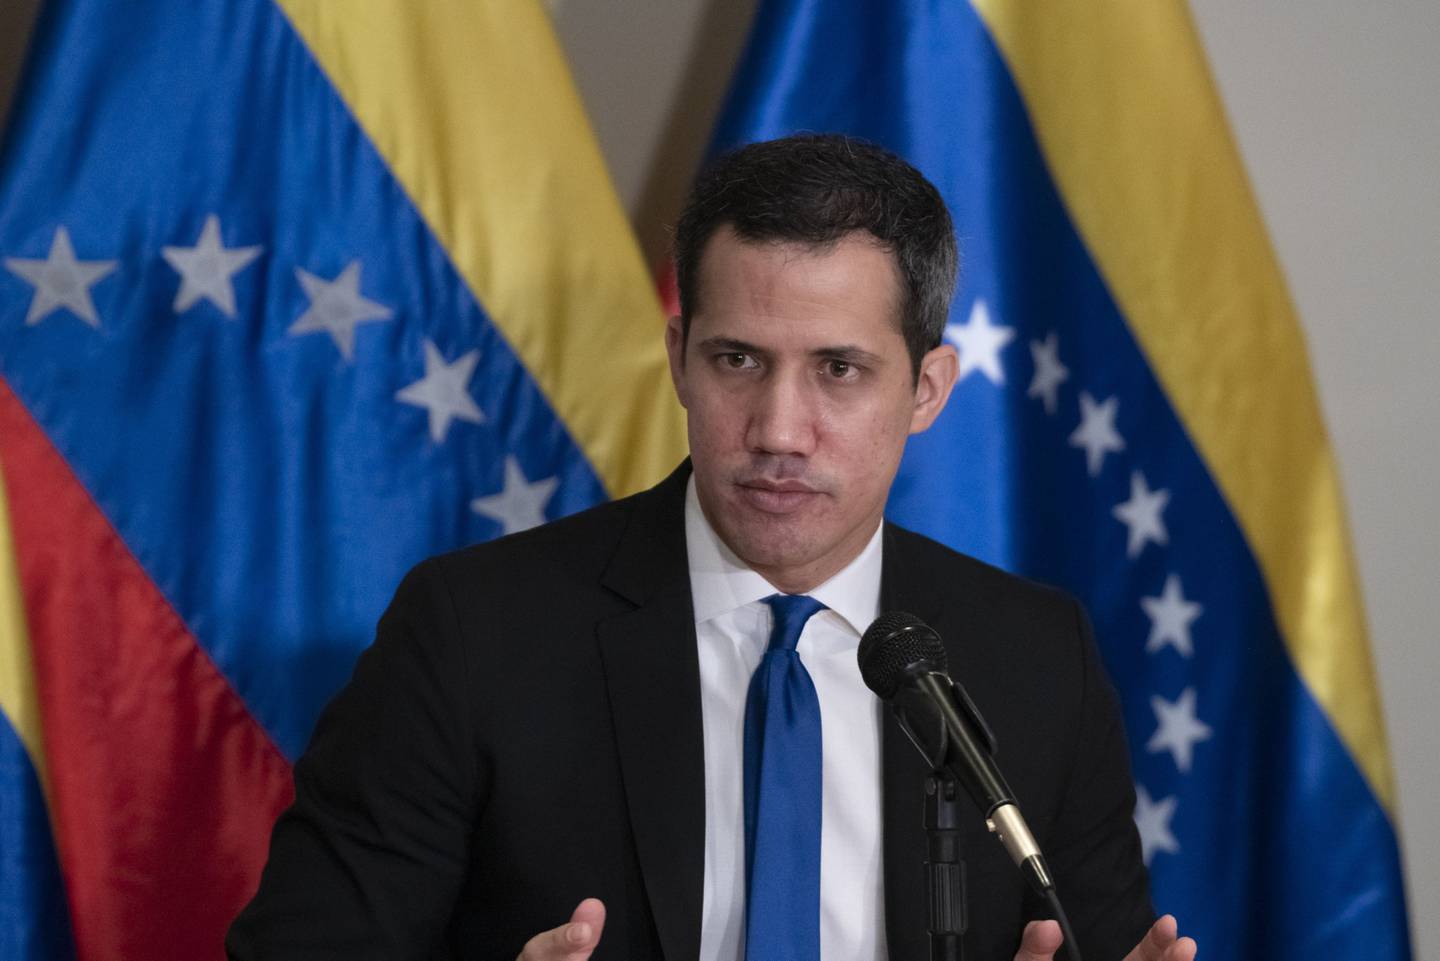 El gobierno interino de Venezuela -reconocido como tal por decenas de países del mundo y encabezado por el líder opositor Juan Guaidó- reclamó el control de Monómeros Colombo Venezolanos en 2019.dfd